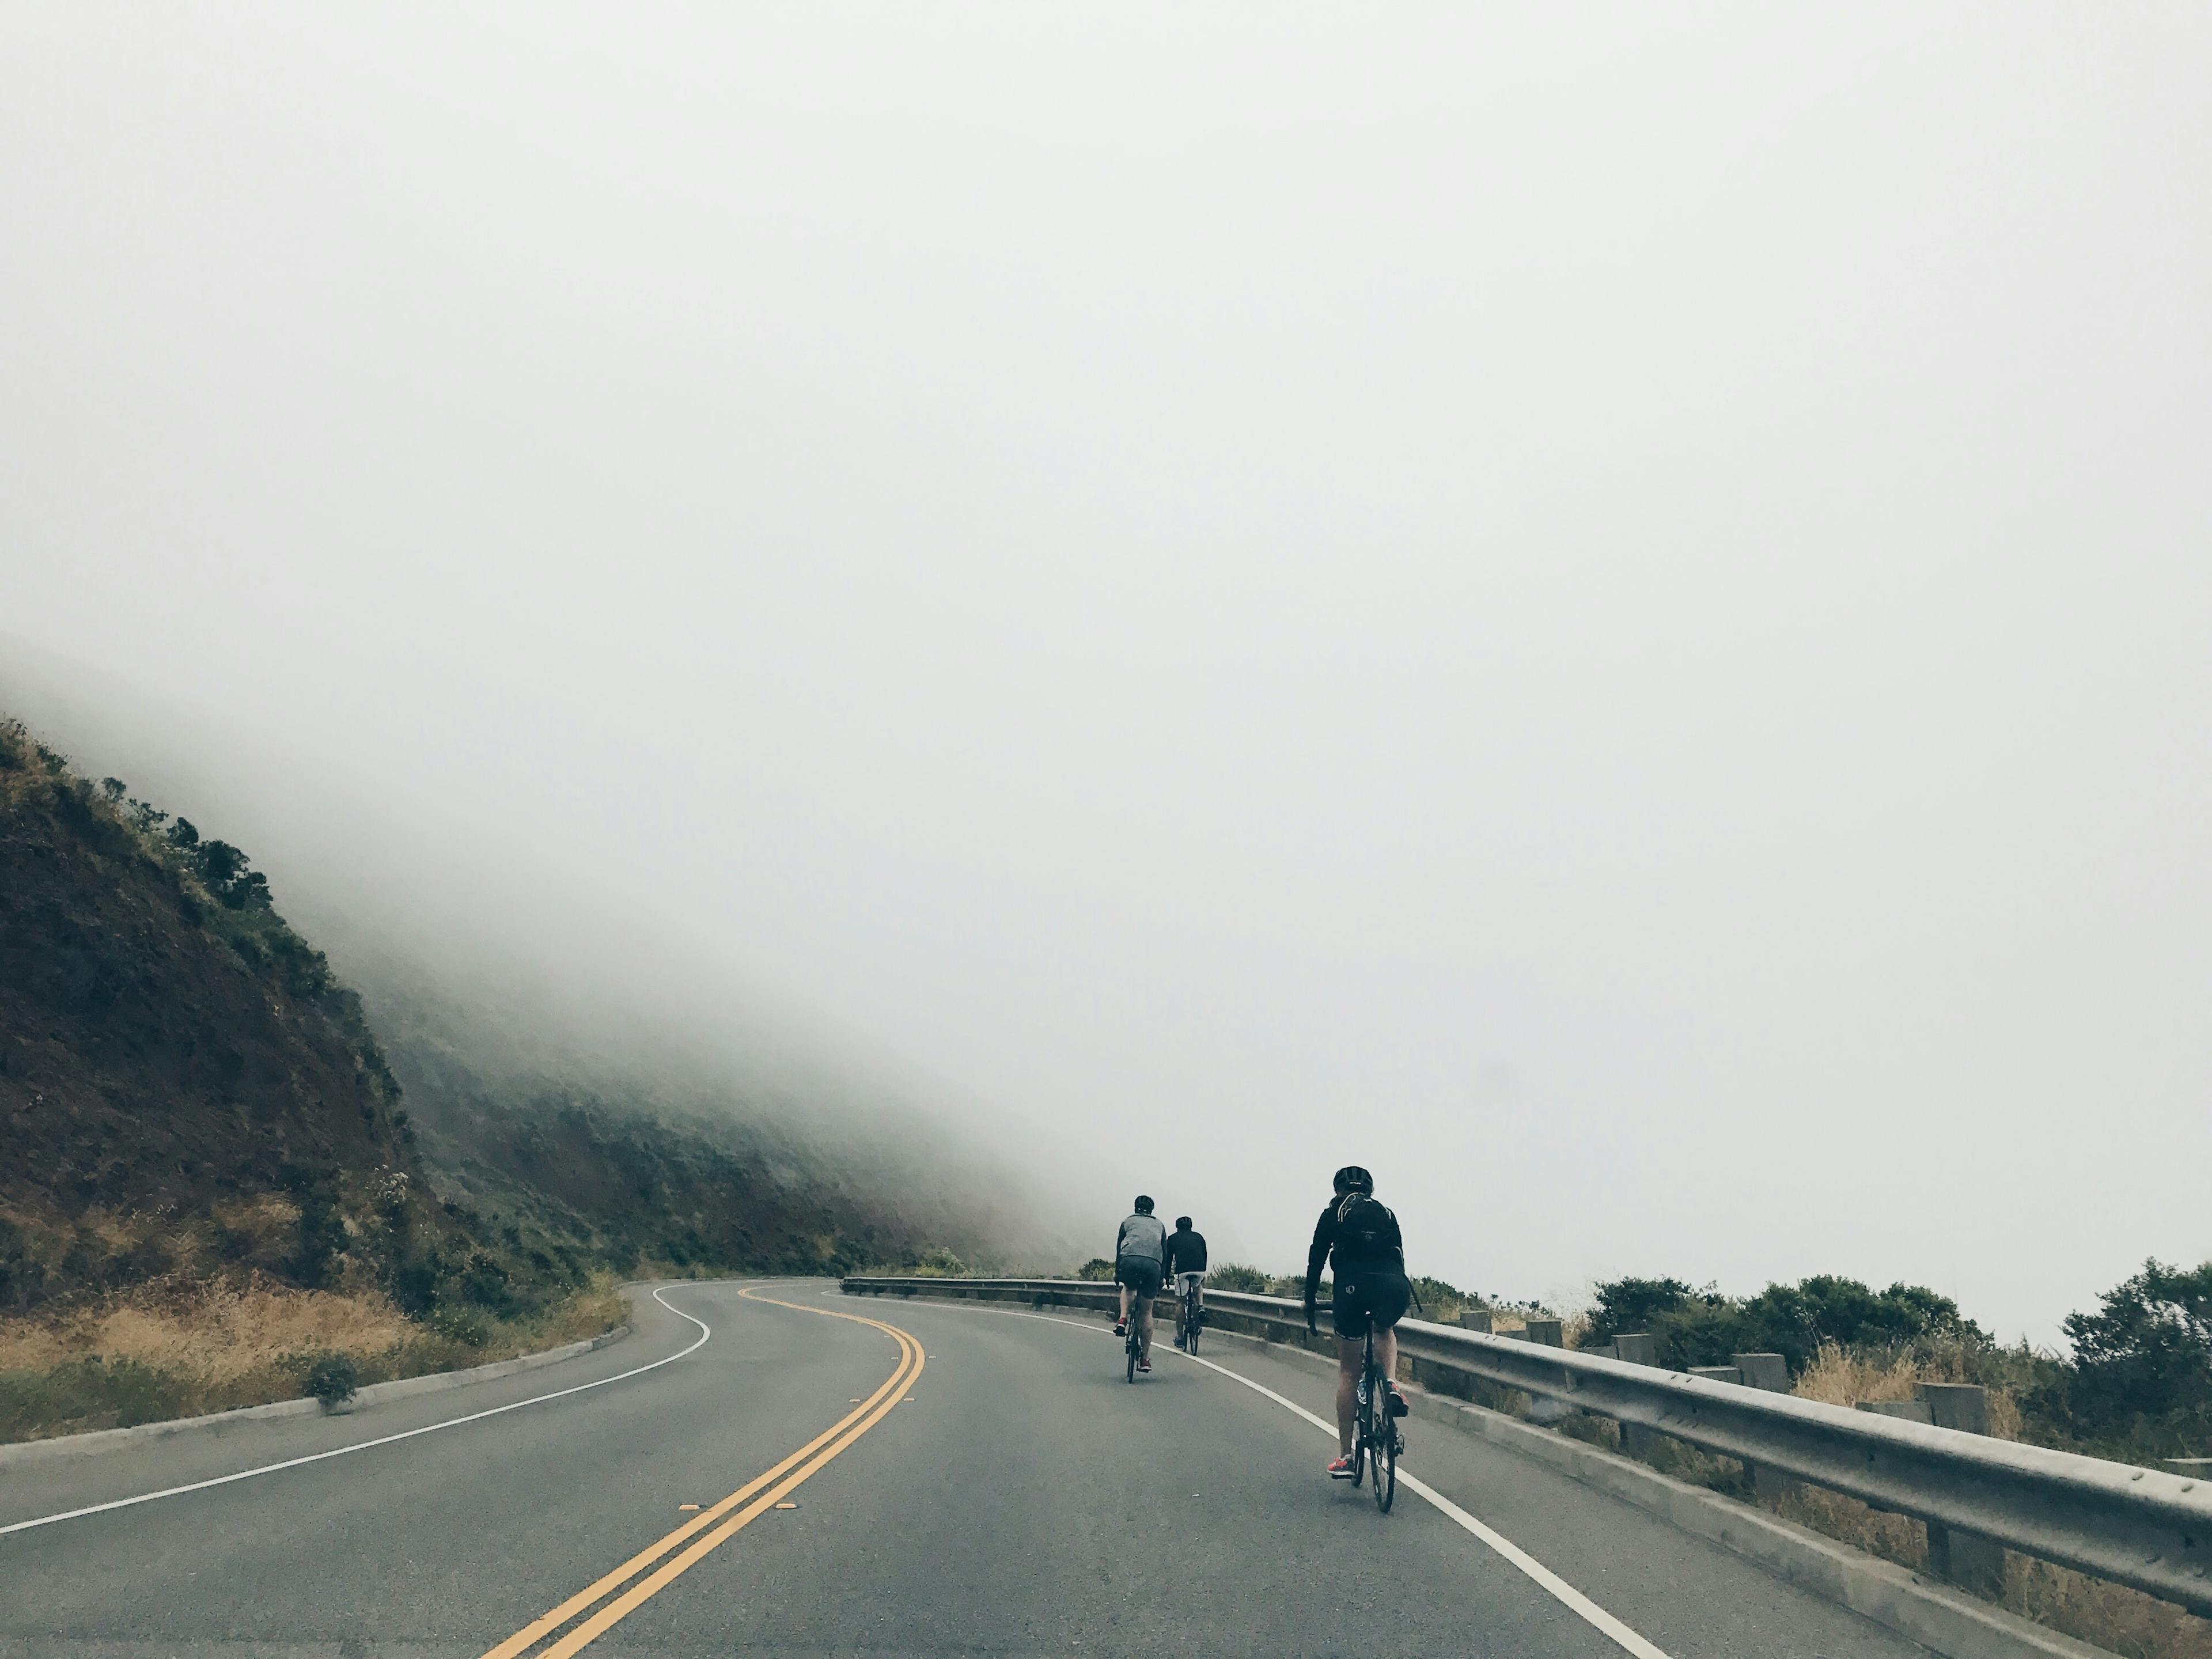 Bike in the fog